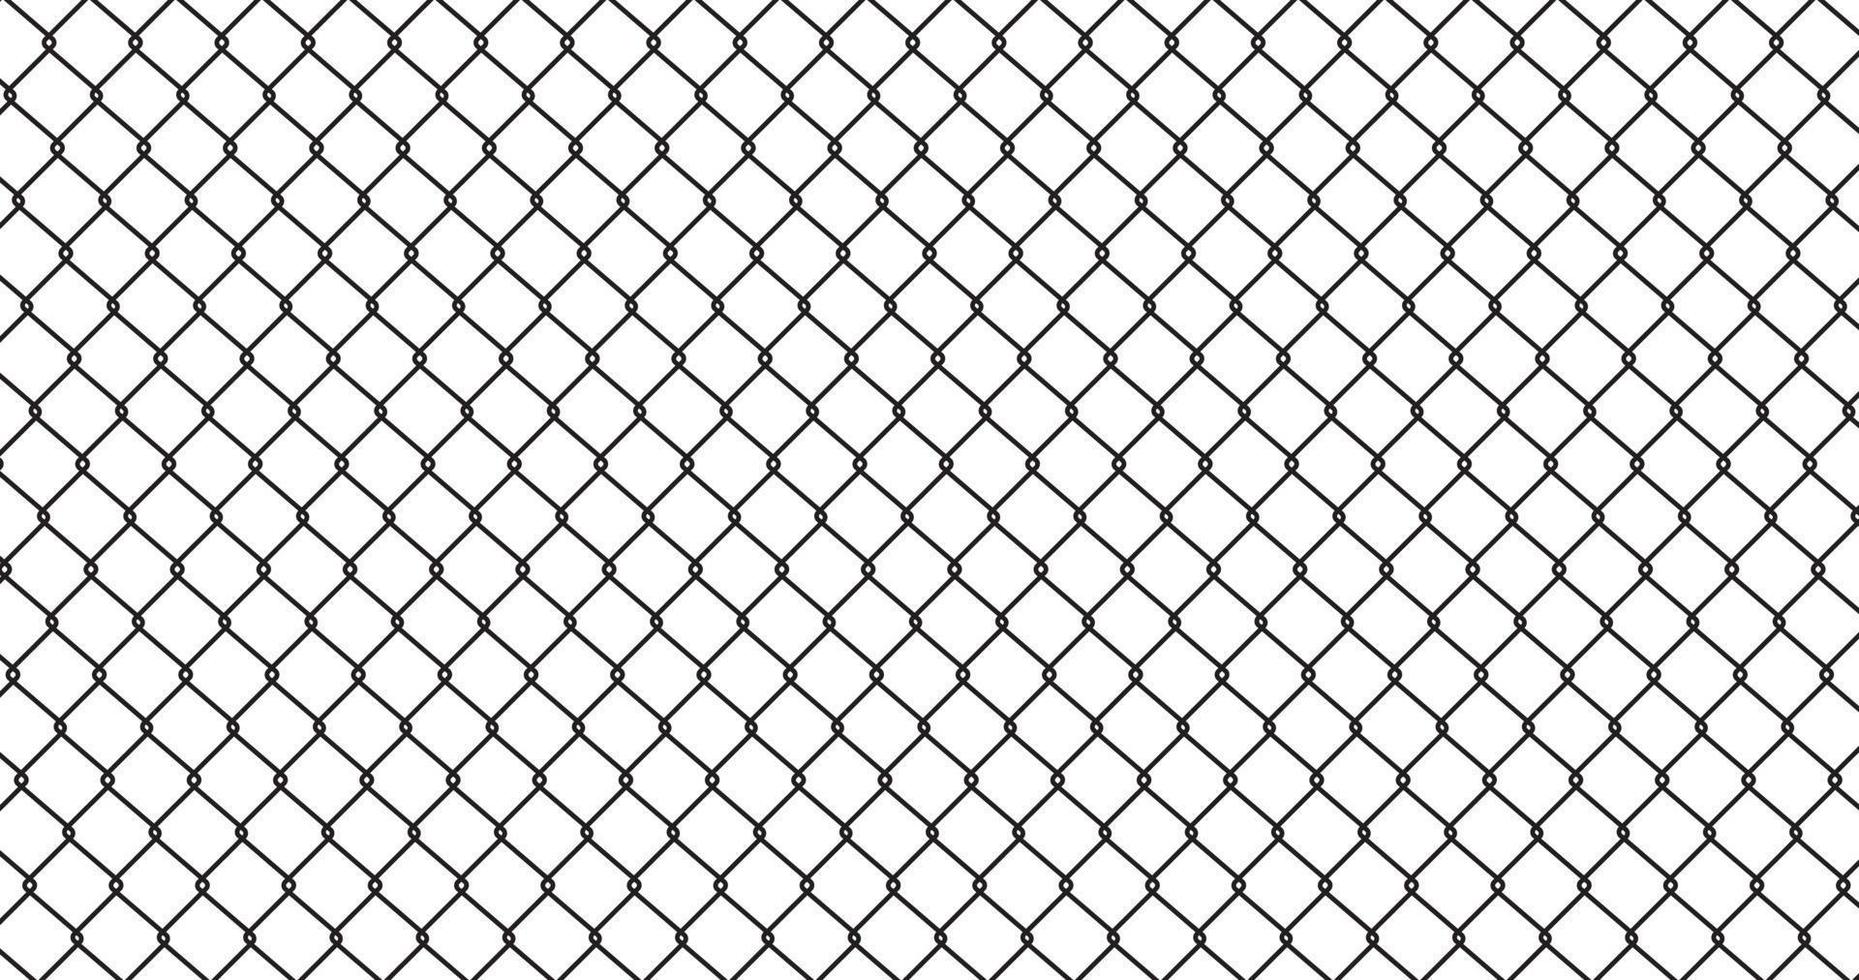 abstracte lijn raster naadloze patroon textuur achtergrond van metalen gaas, gevangenis barrière hek, beveiligde eigendom, ketting link hek gaas. vector illustratie plat ontwerp. geïsoleerd op een witte achtergrond.